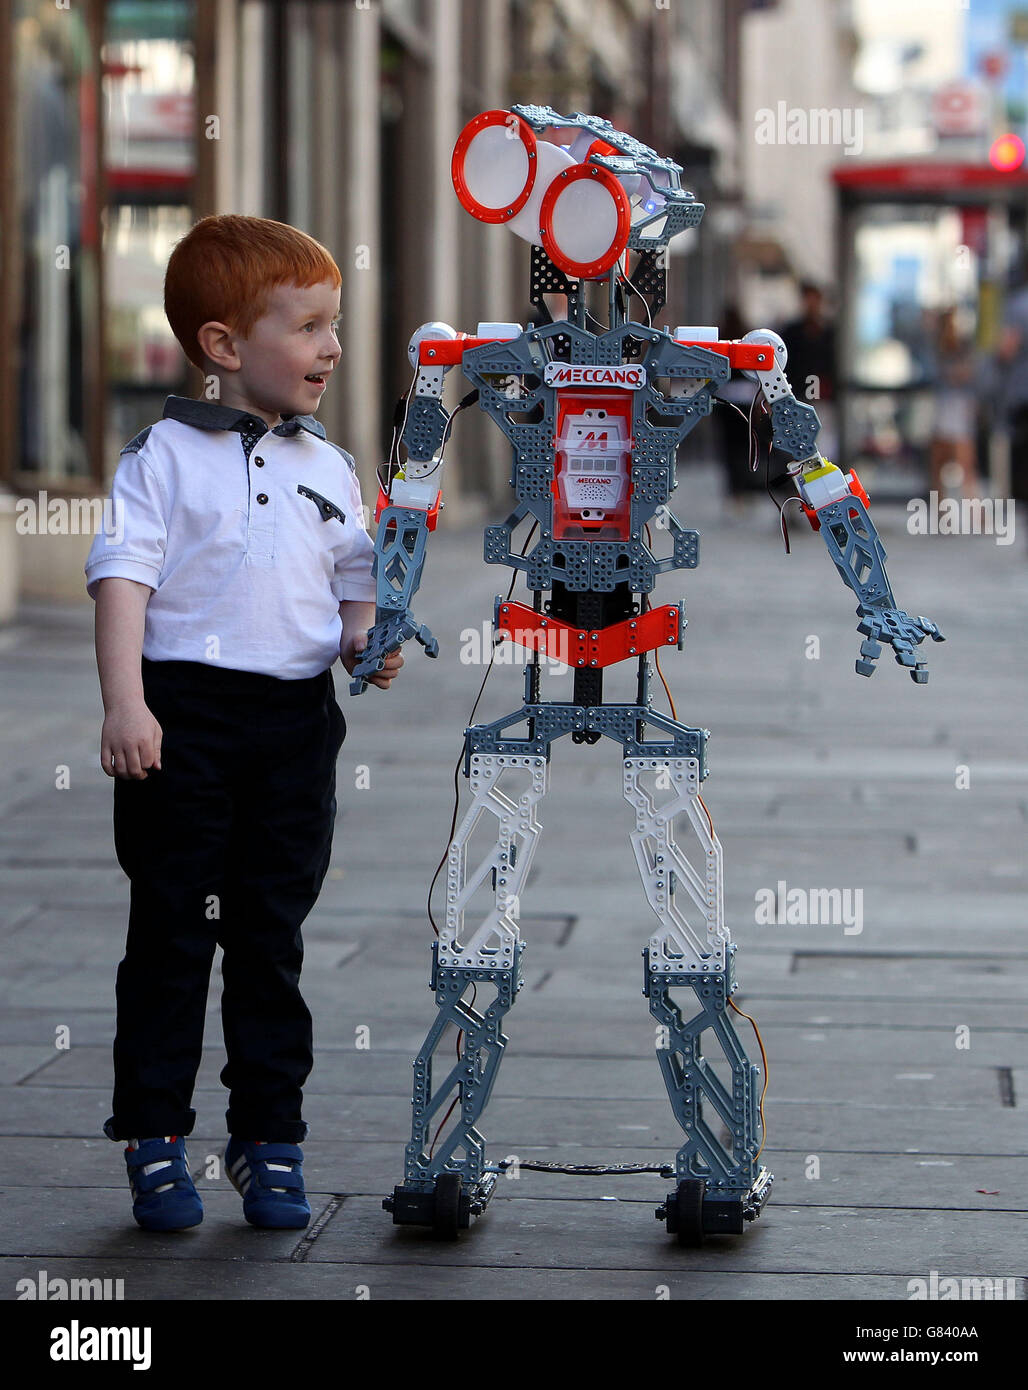 Tecnología - Gama de juguetes Hamleys Navidad 2015 - Meccanoid G15 KS Robot  - Londres Fotografía de stock - Alamy